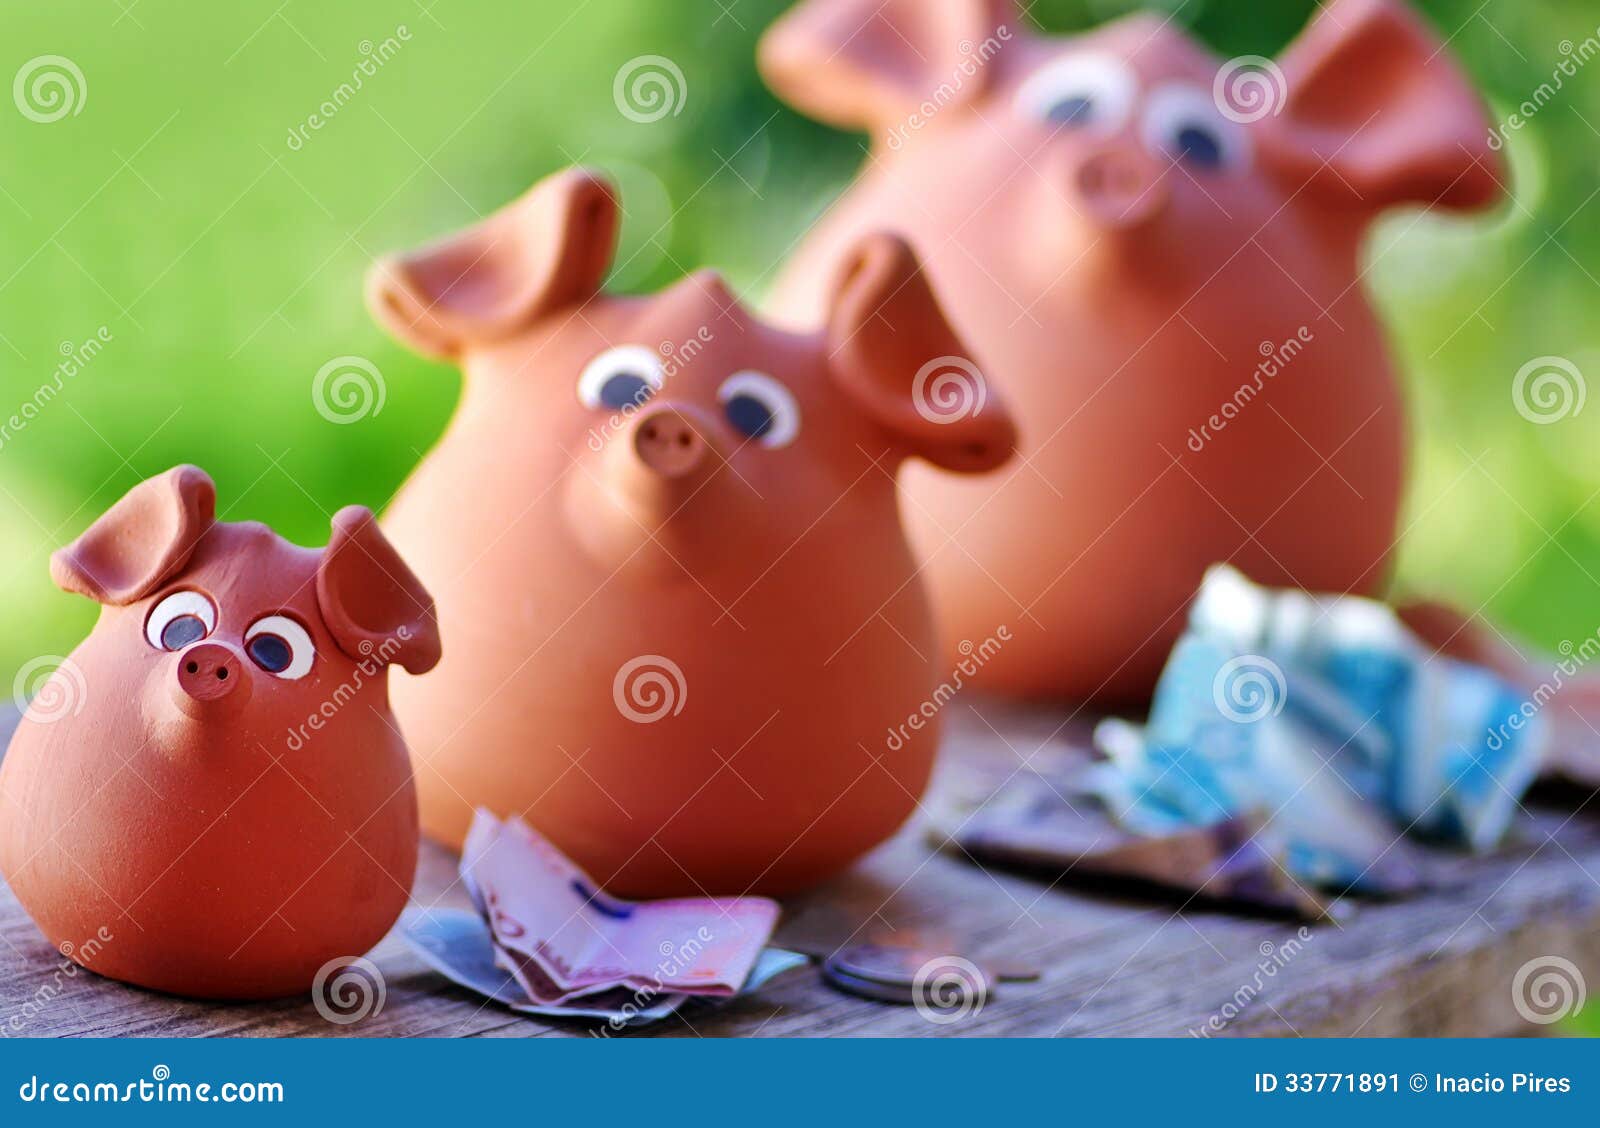 three ceramic piggy banks